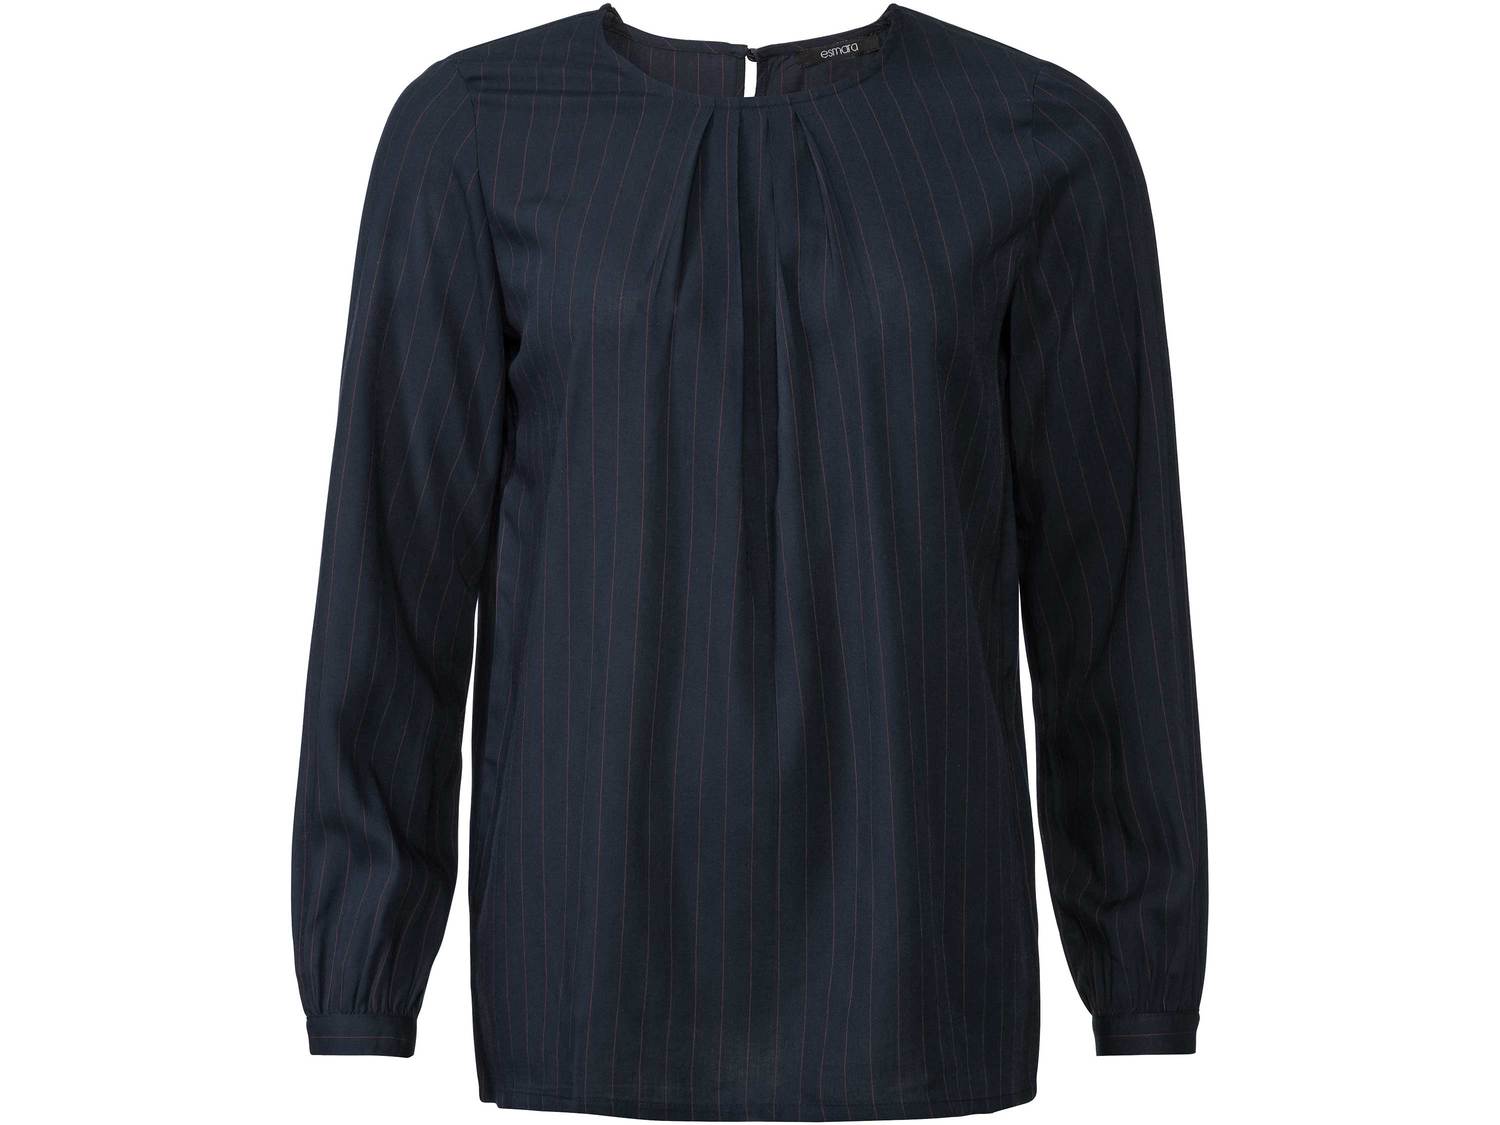 Bluzka z wiskozy Esmara, cena 29,99 PLN 
- zapięcie na guzik na plecach
- zapinane ...